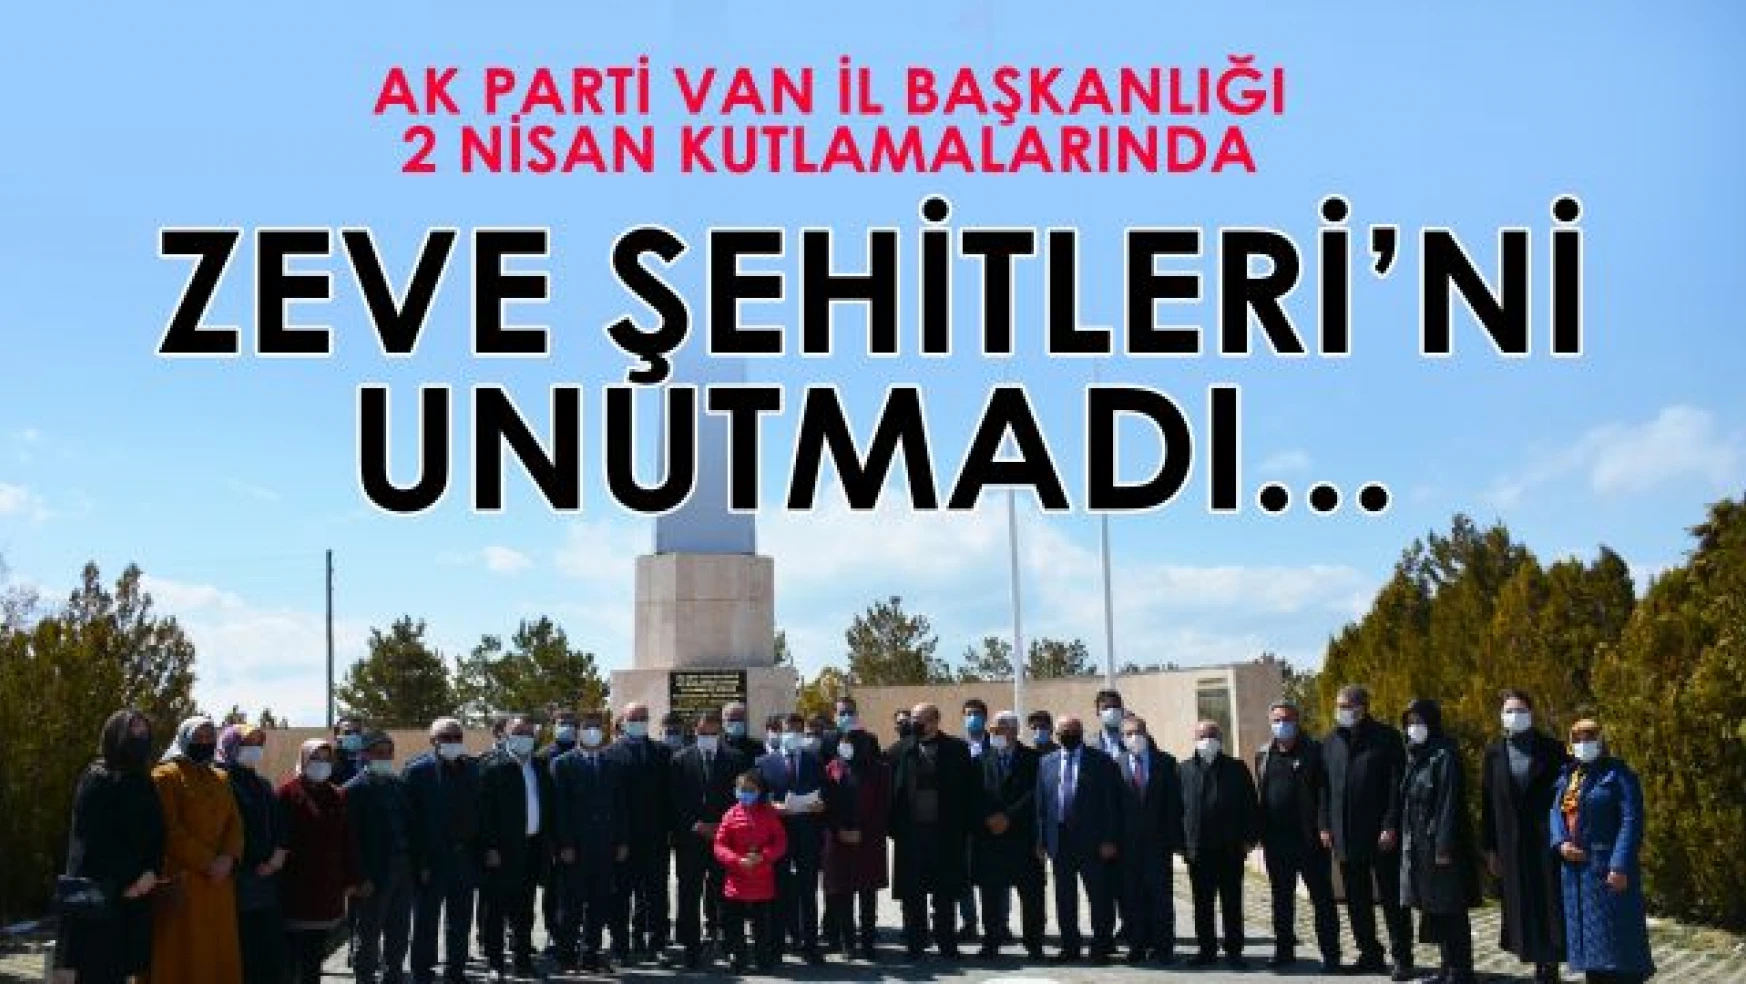 Van AK Parti, 2 Nisan kutlamalarında Zeve Şehitlerini unutmadı